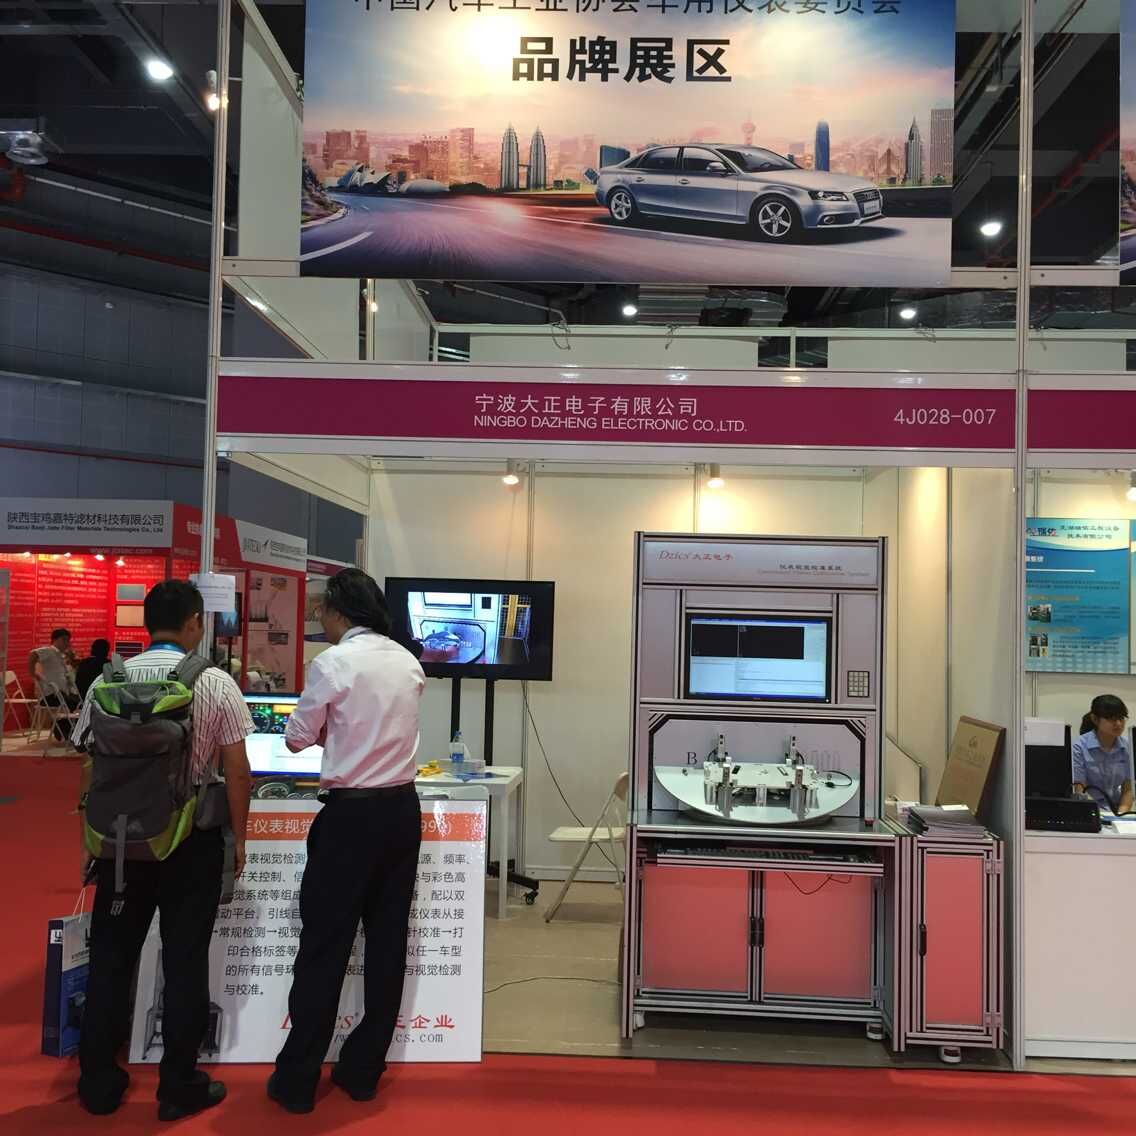 大正电子有限公司参加上海国际汽车商品交易展